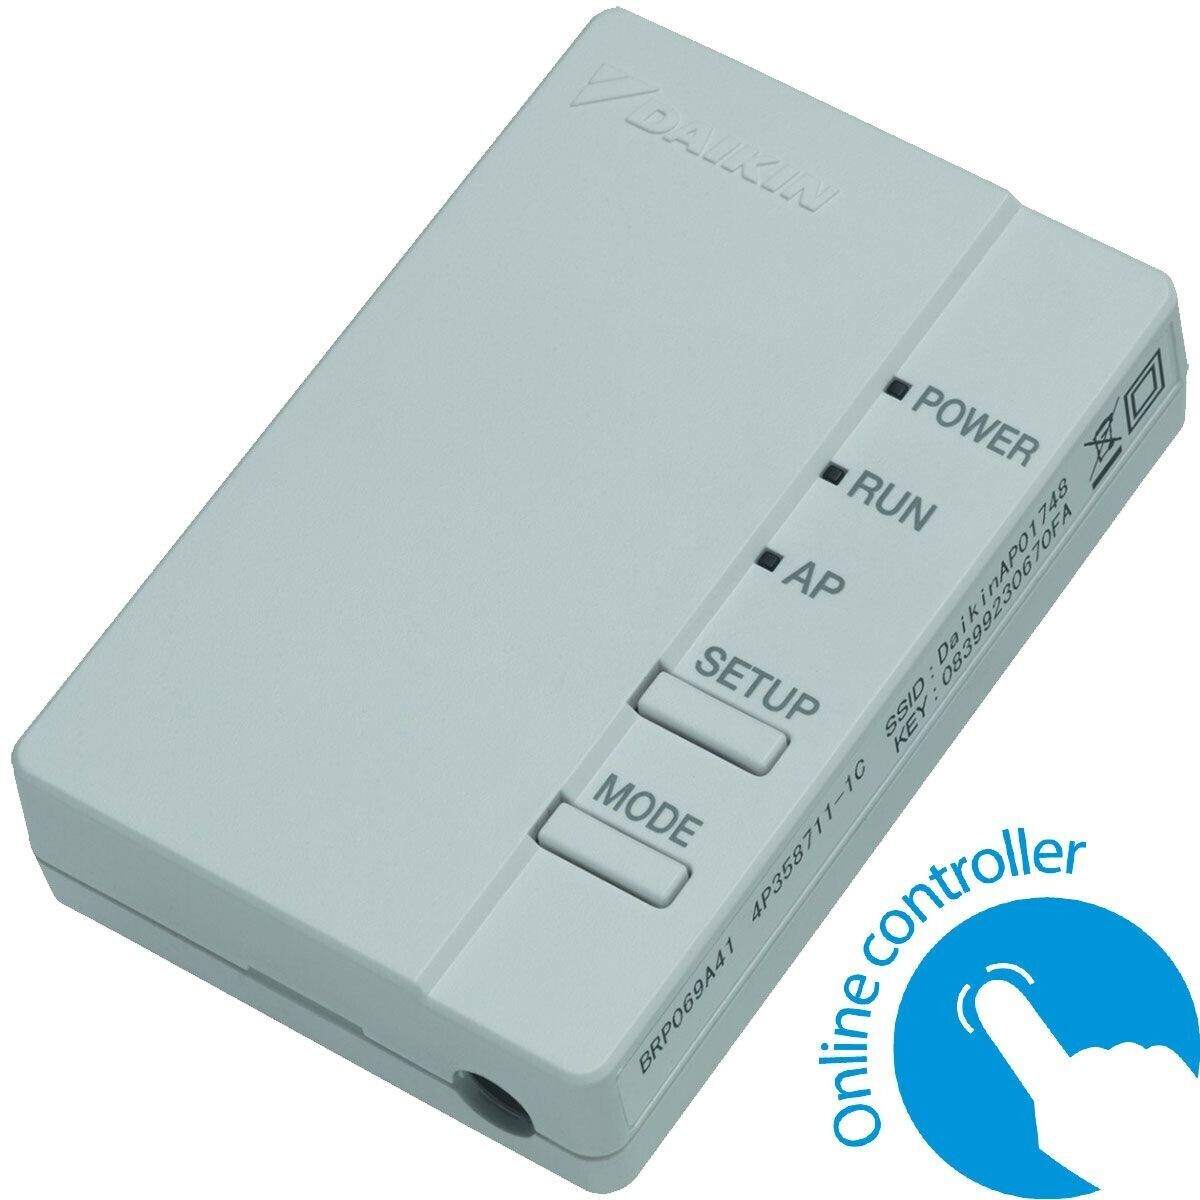 Daikin Wi-Fi Controller (BRP069B45) a € 33,00 (oggi)